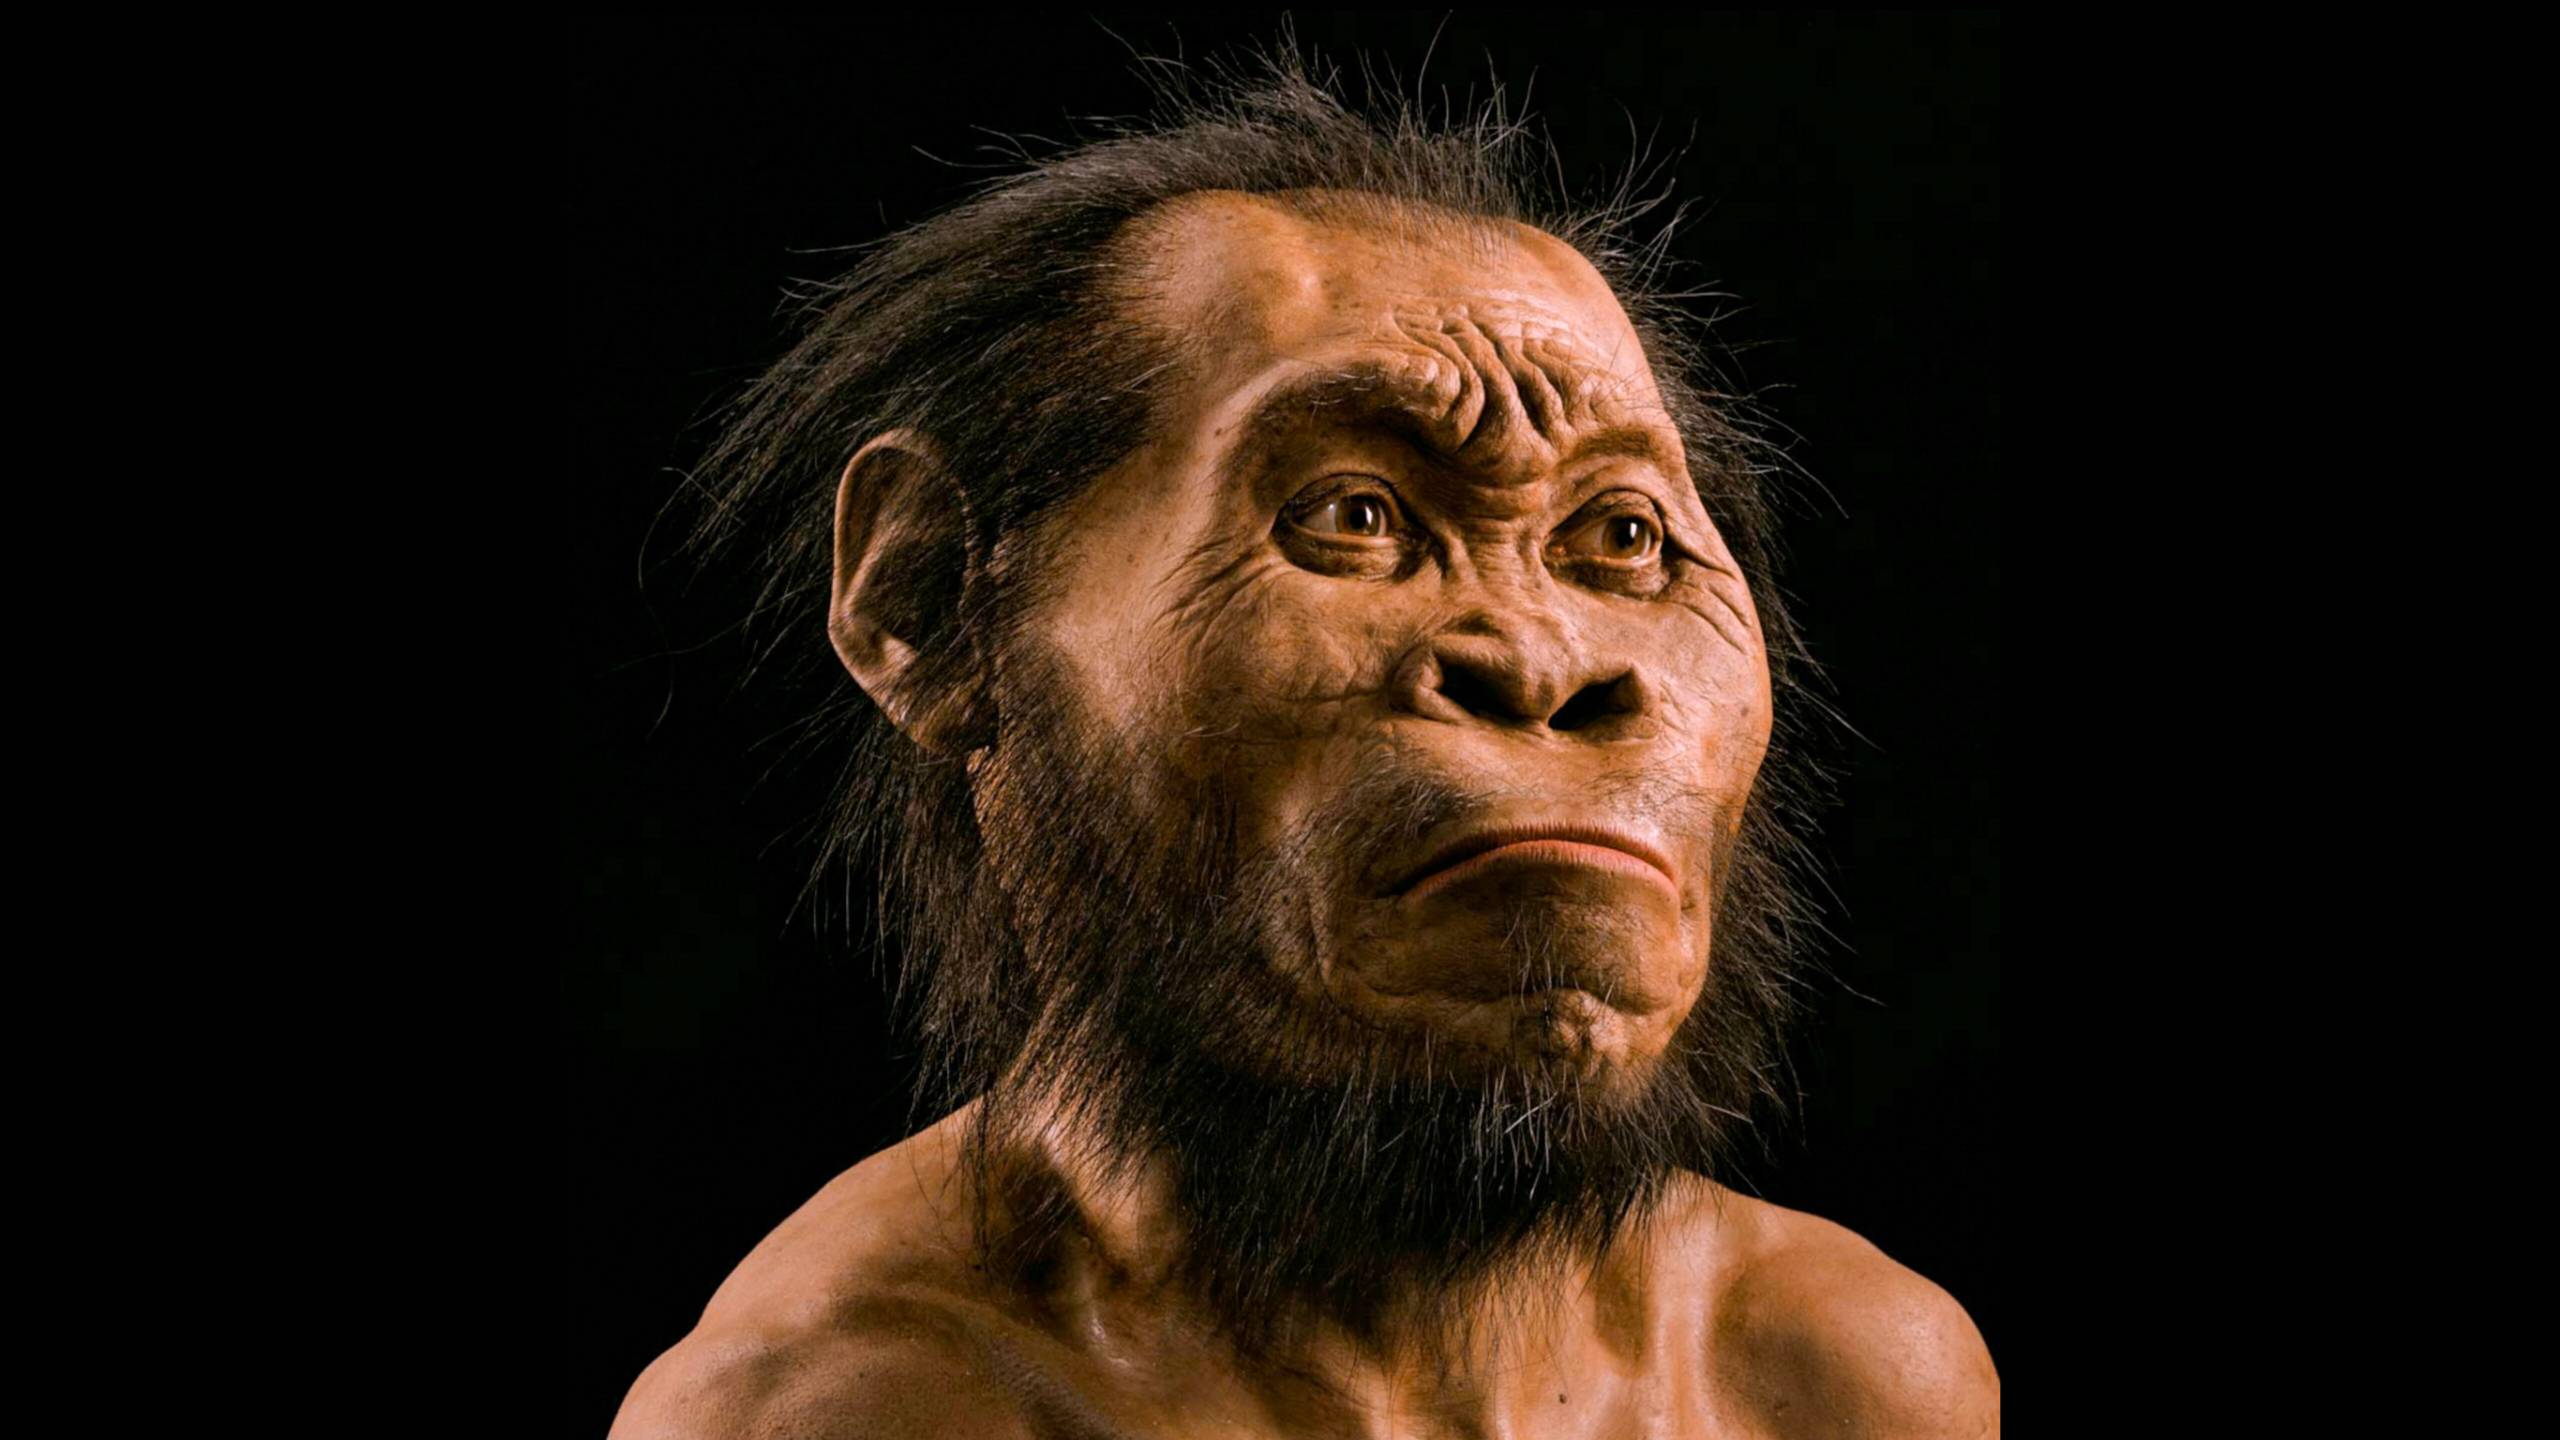 Ngagunakeun scan tulang, paleoartist John Gurche méakkeun sabudeureun 700 jam nyieun rekonstruksi sirah Homo naledi urang.